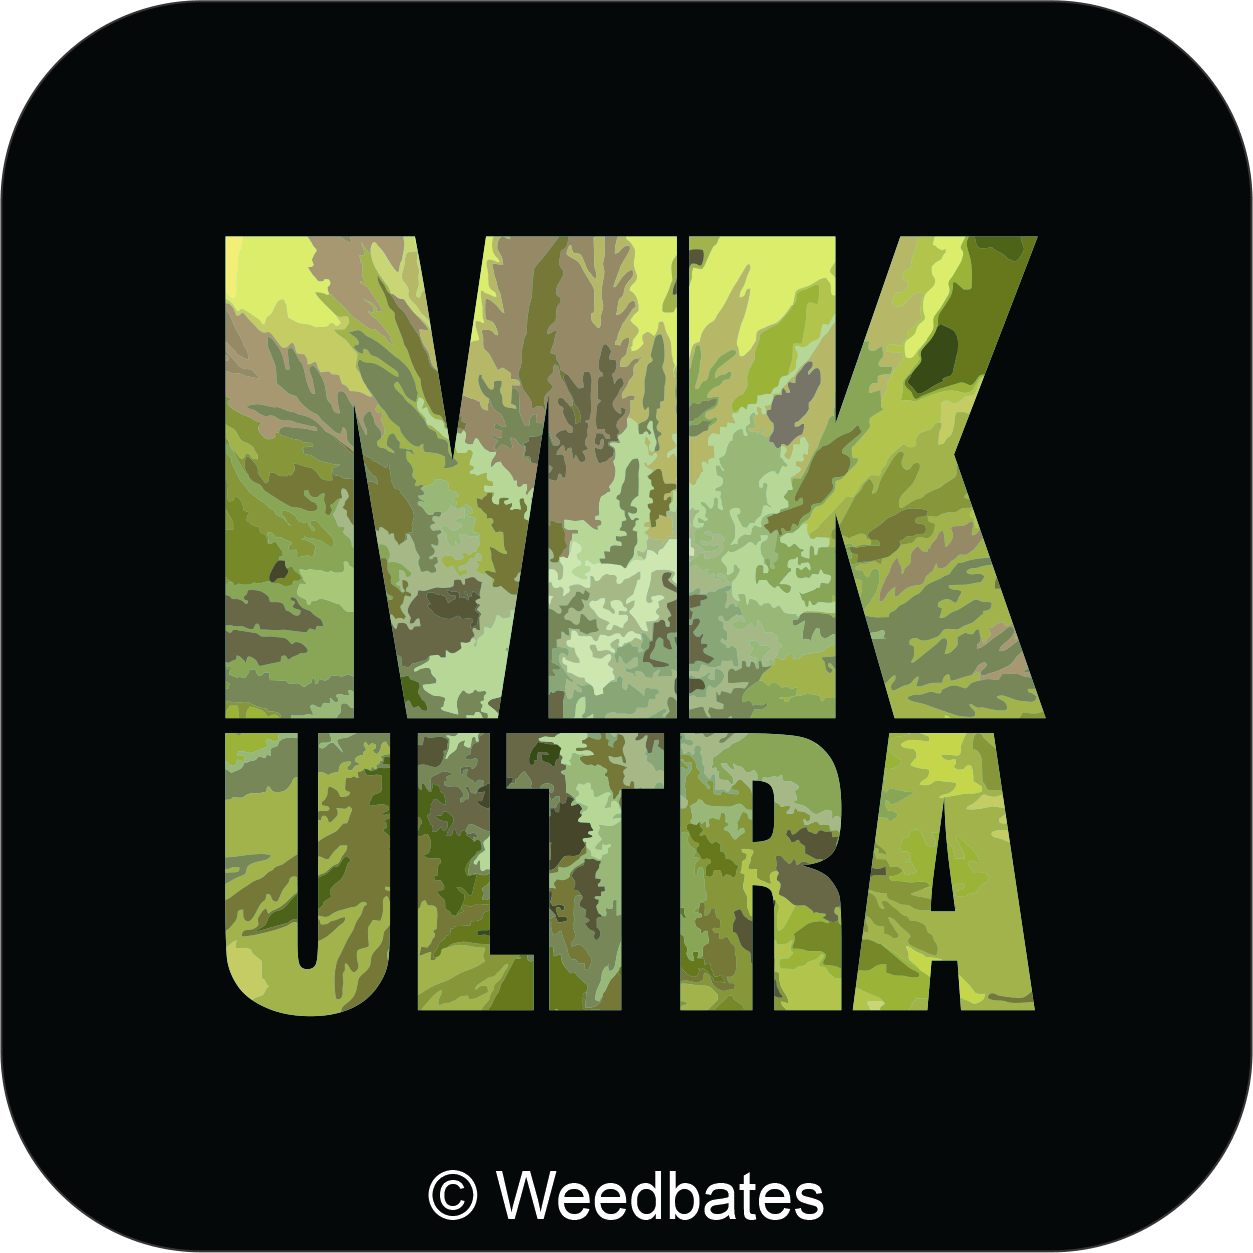 MK Ultra cannabis strain